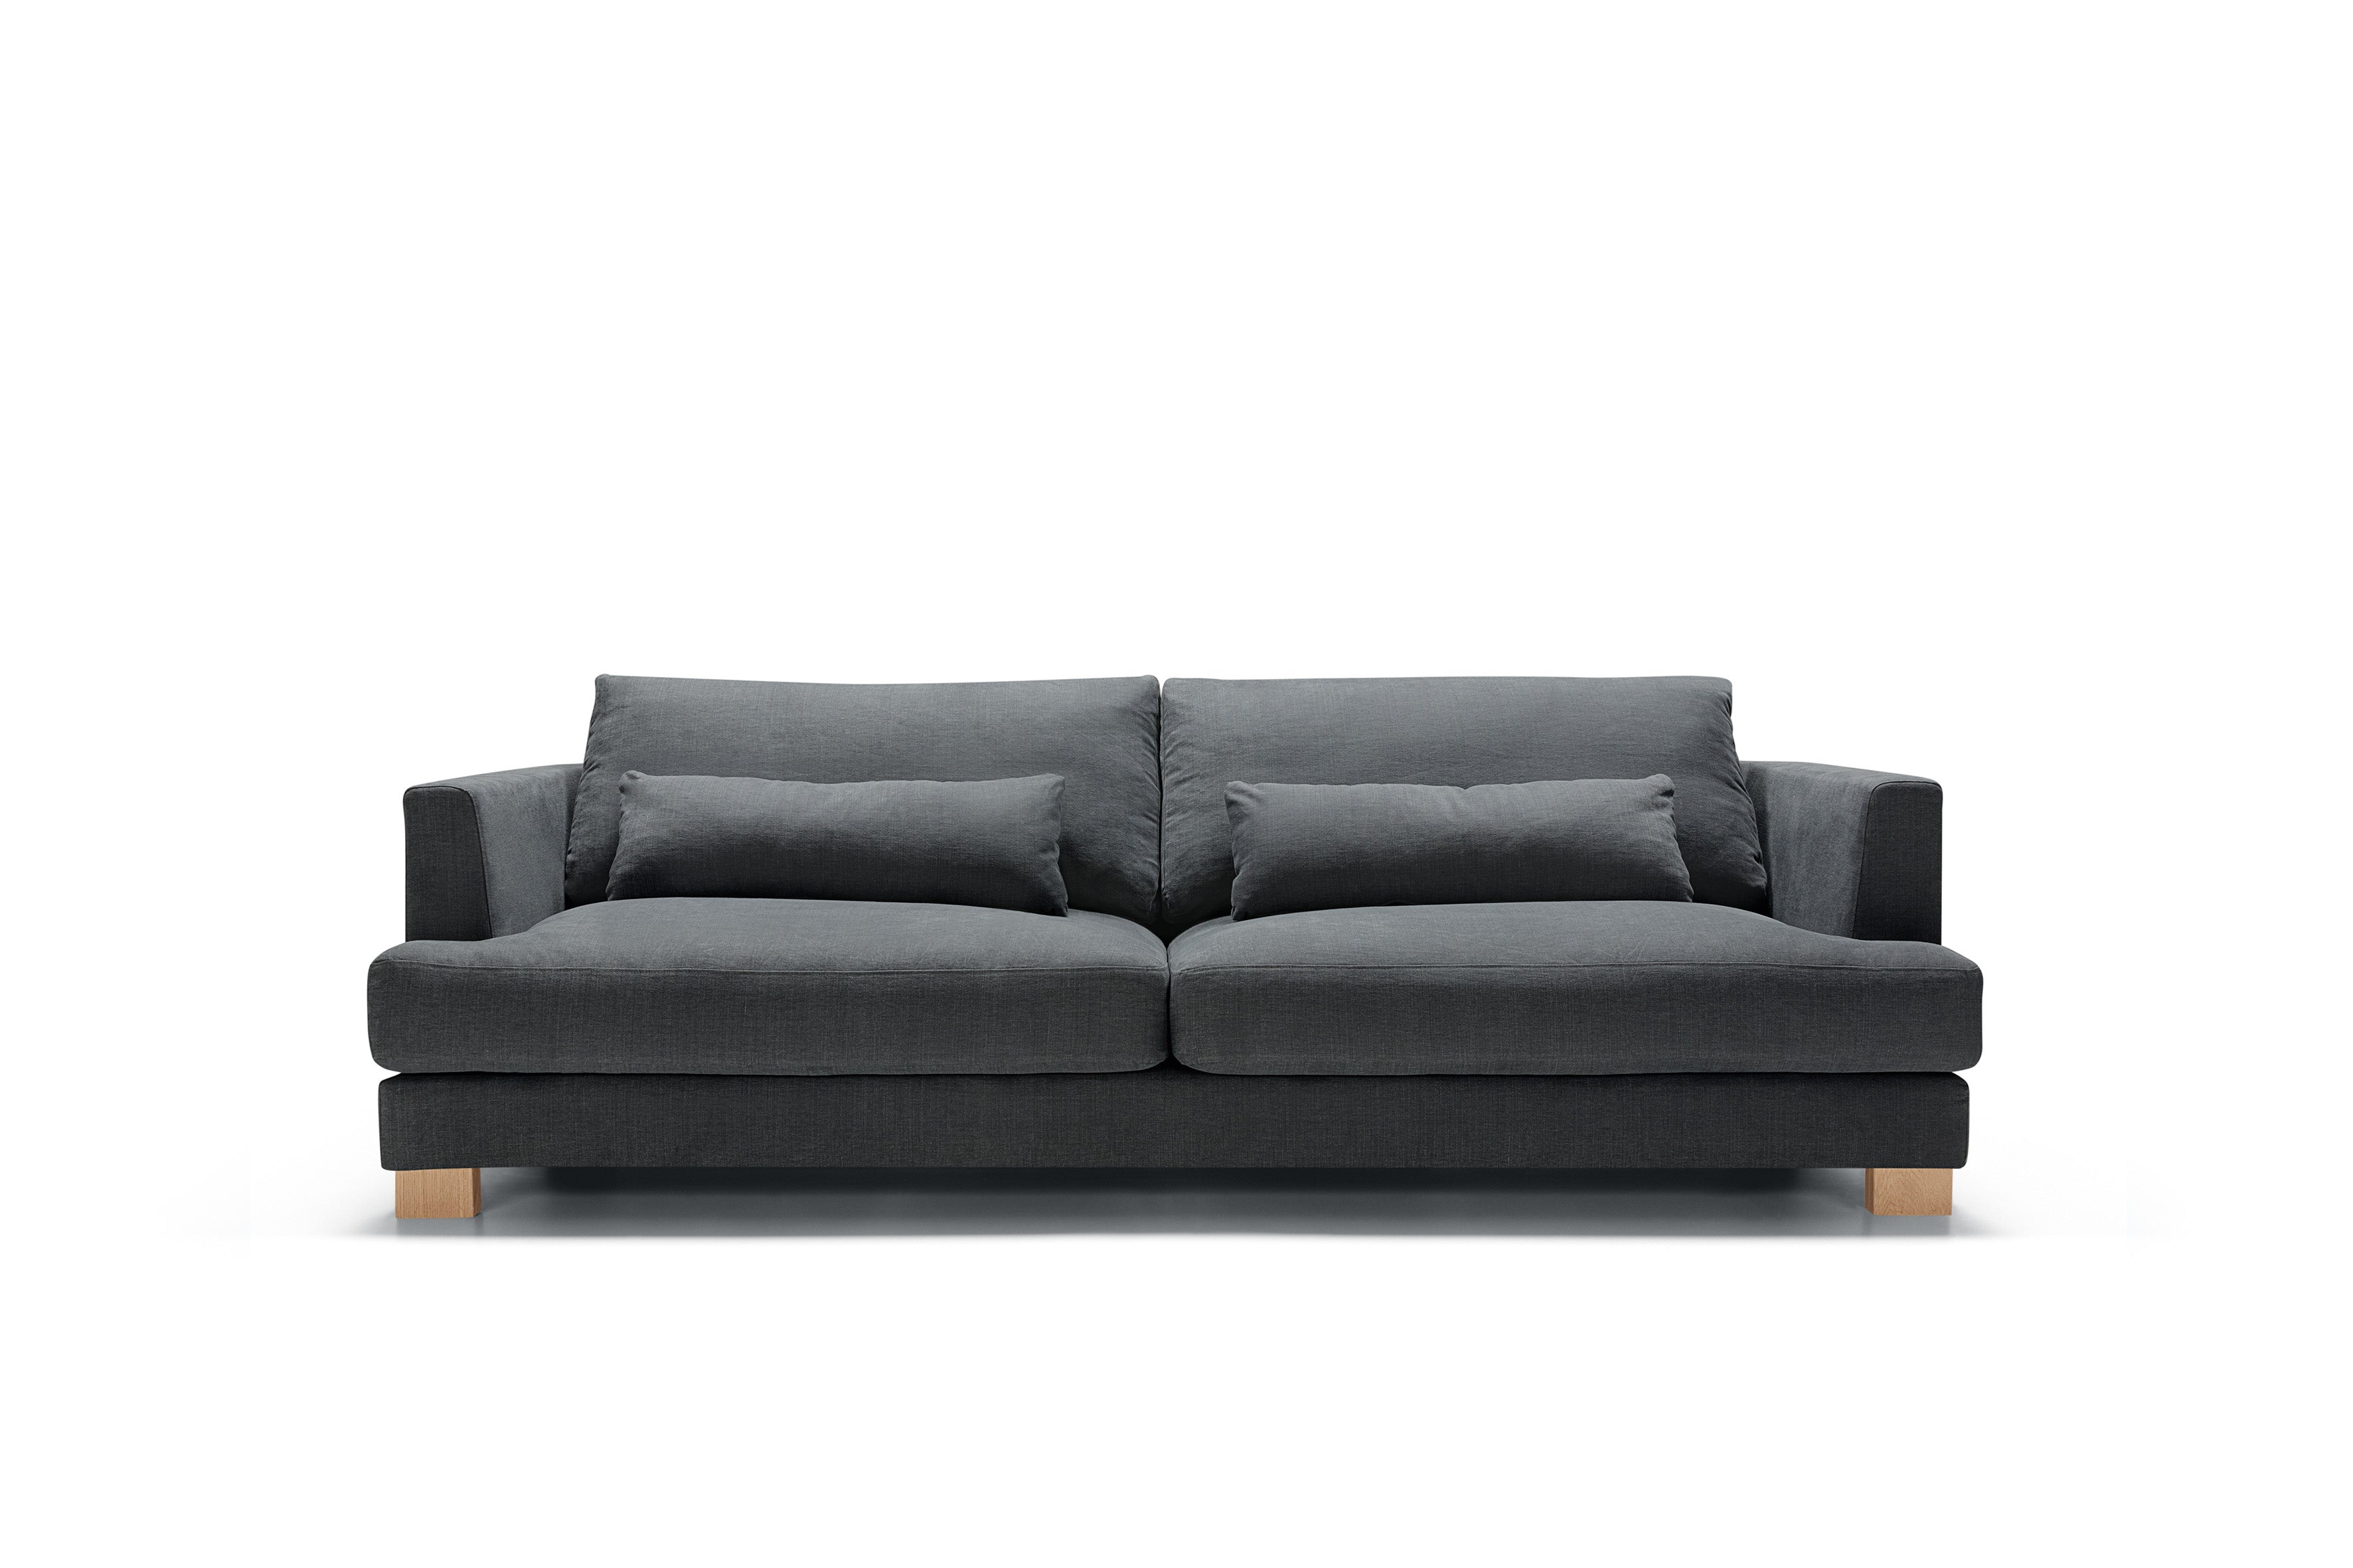 Mastrella Bruno 3 Seater Sofa